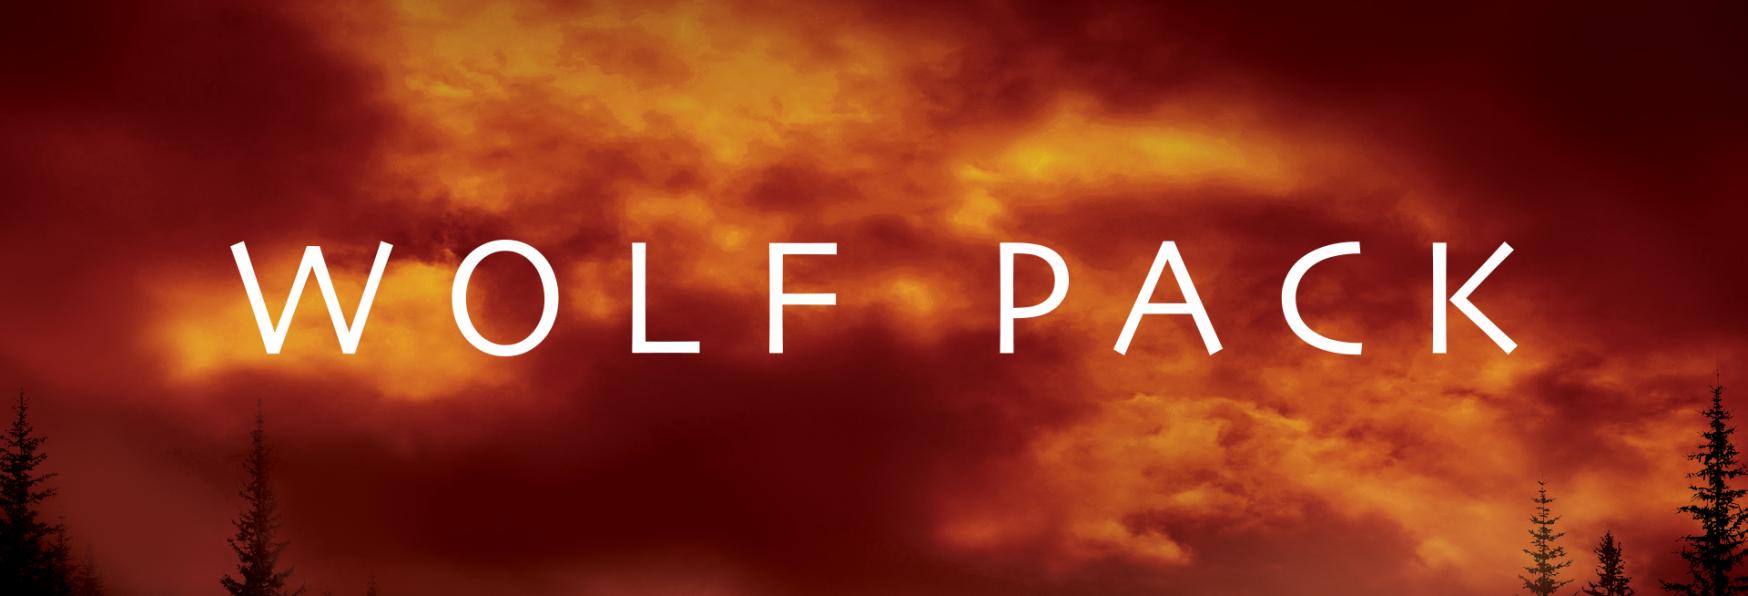 Wolf Pack: Paramount+ rilascia il Trailer Ufficiale della Serie TV Spin-off di Teen Wolf